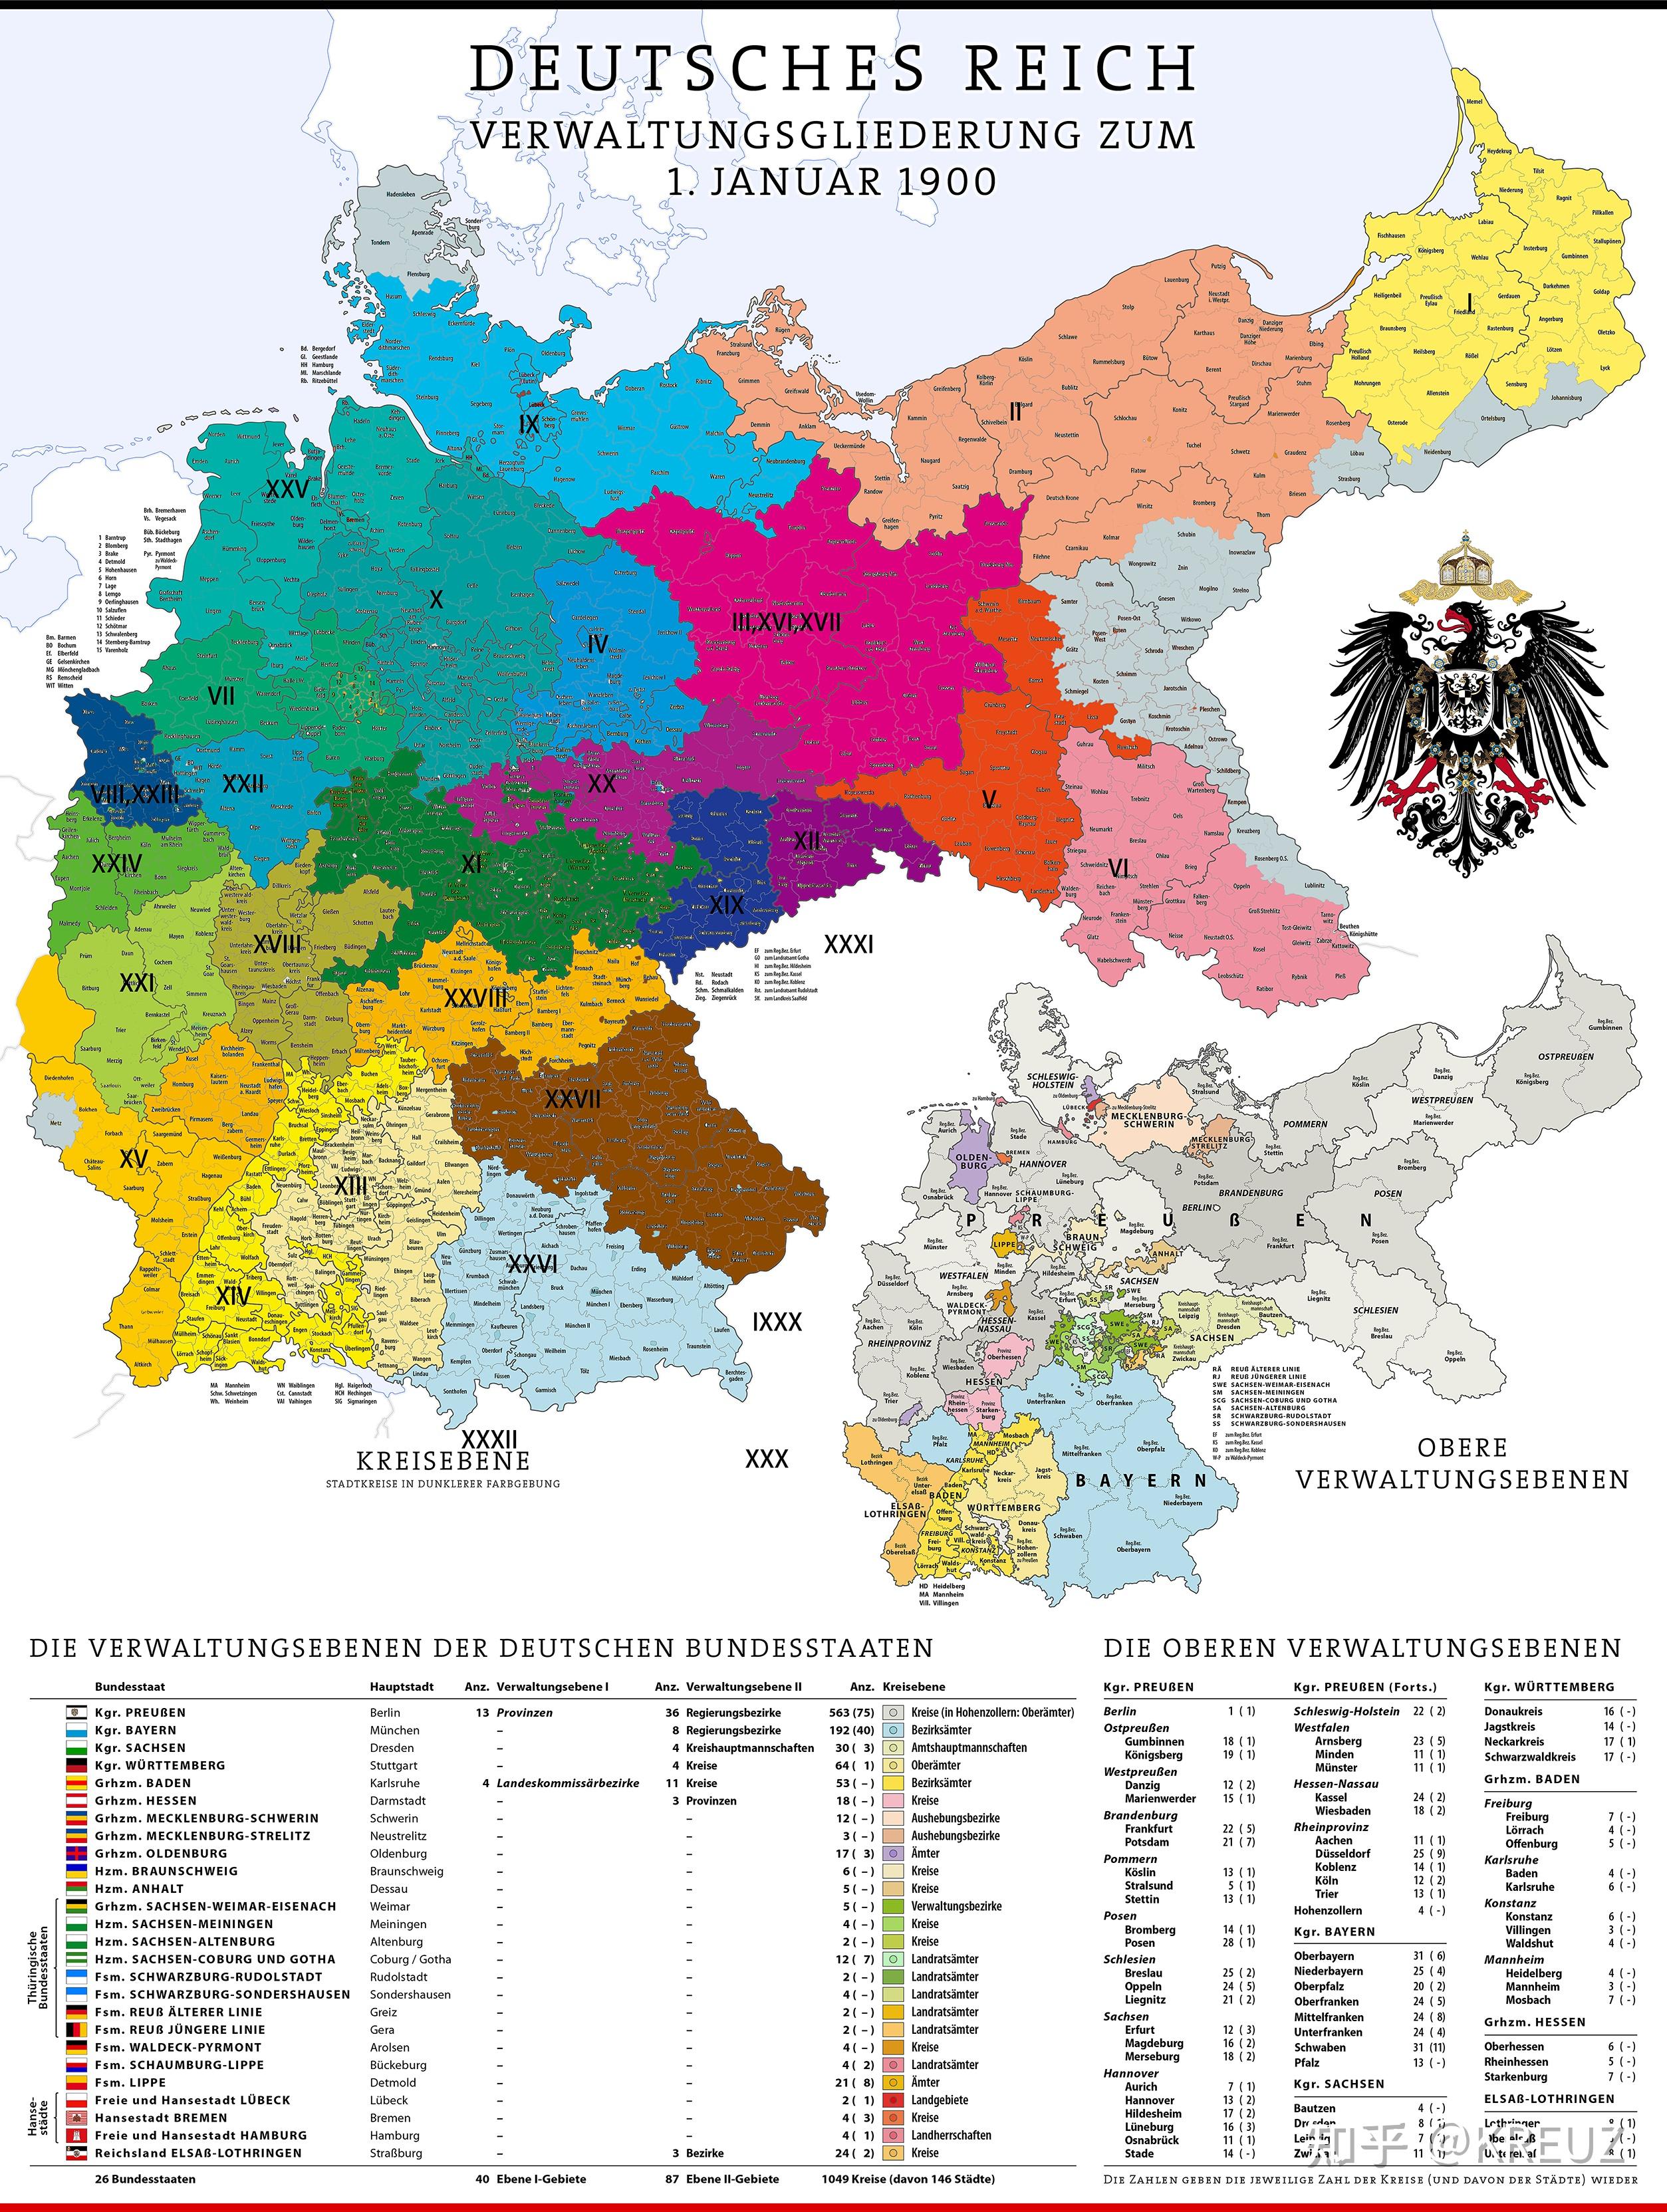 底图为1900德意志帝国,灰色区域为战后公投脱离的),而这32个军区又被